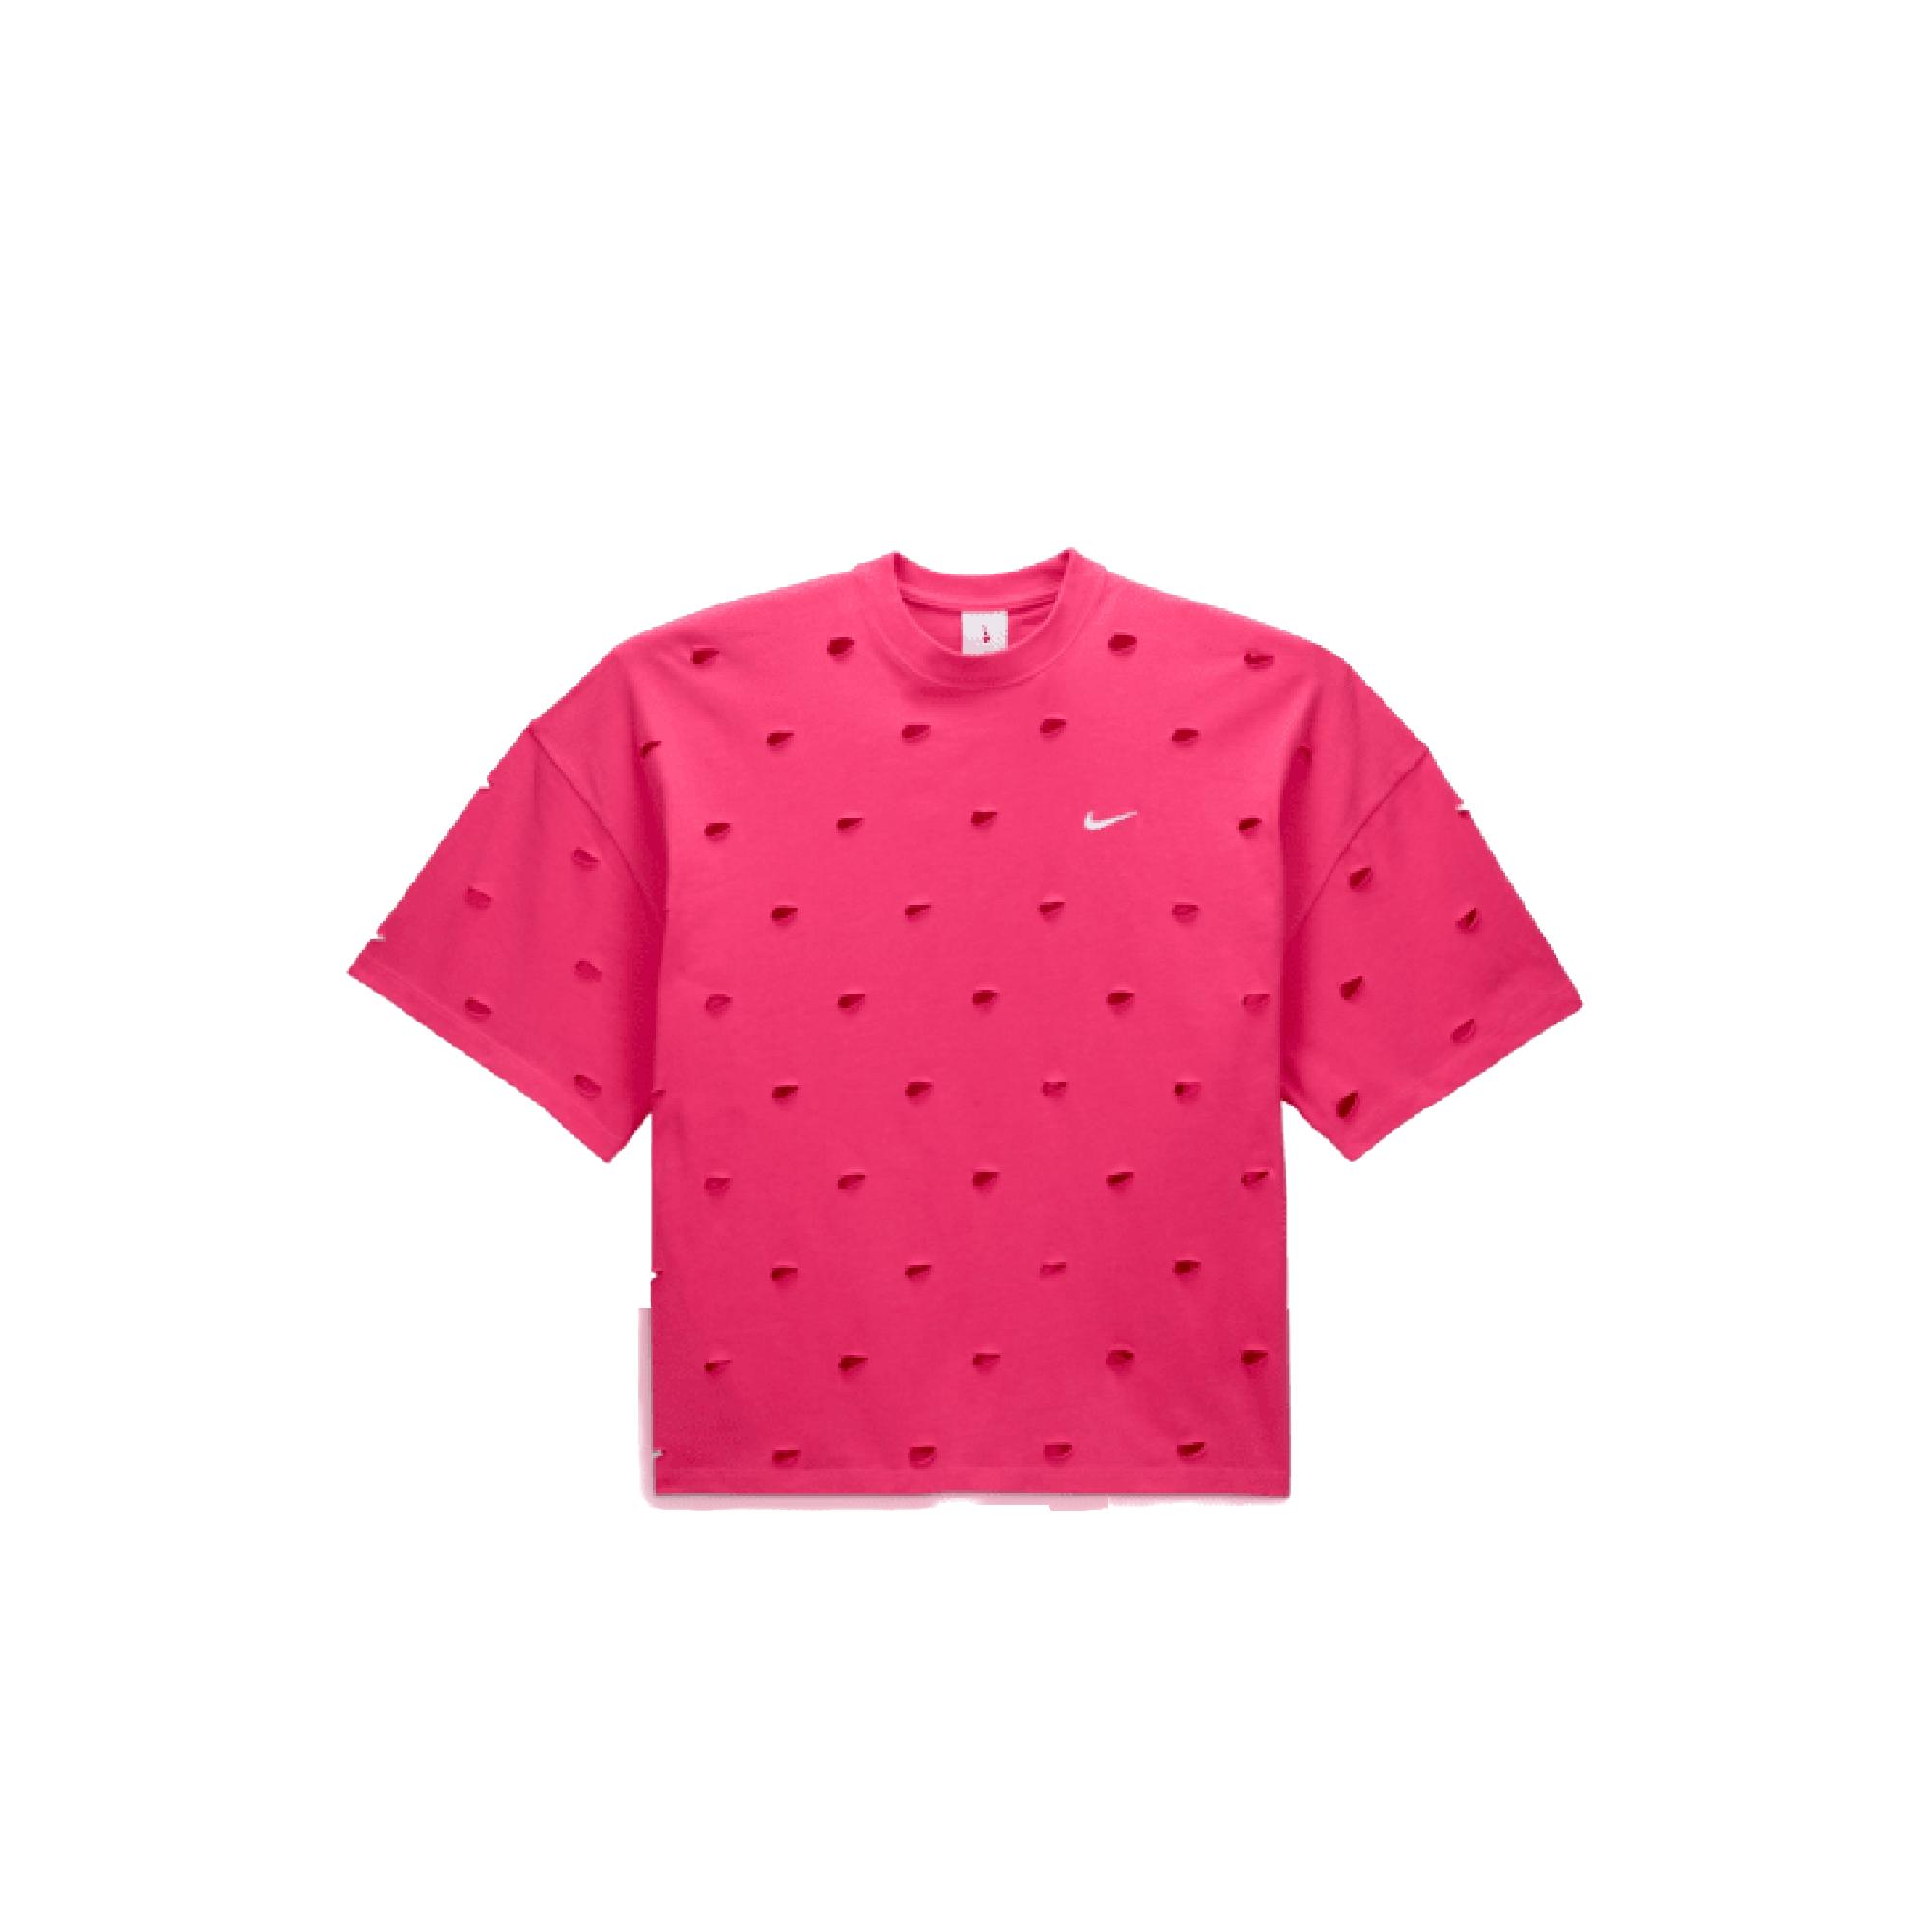 자크뮈스 x 나이키 티셔츠 다크 핑크 (아시아)